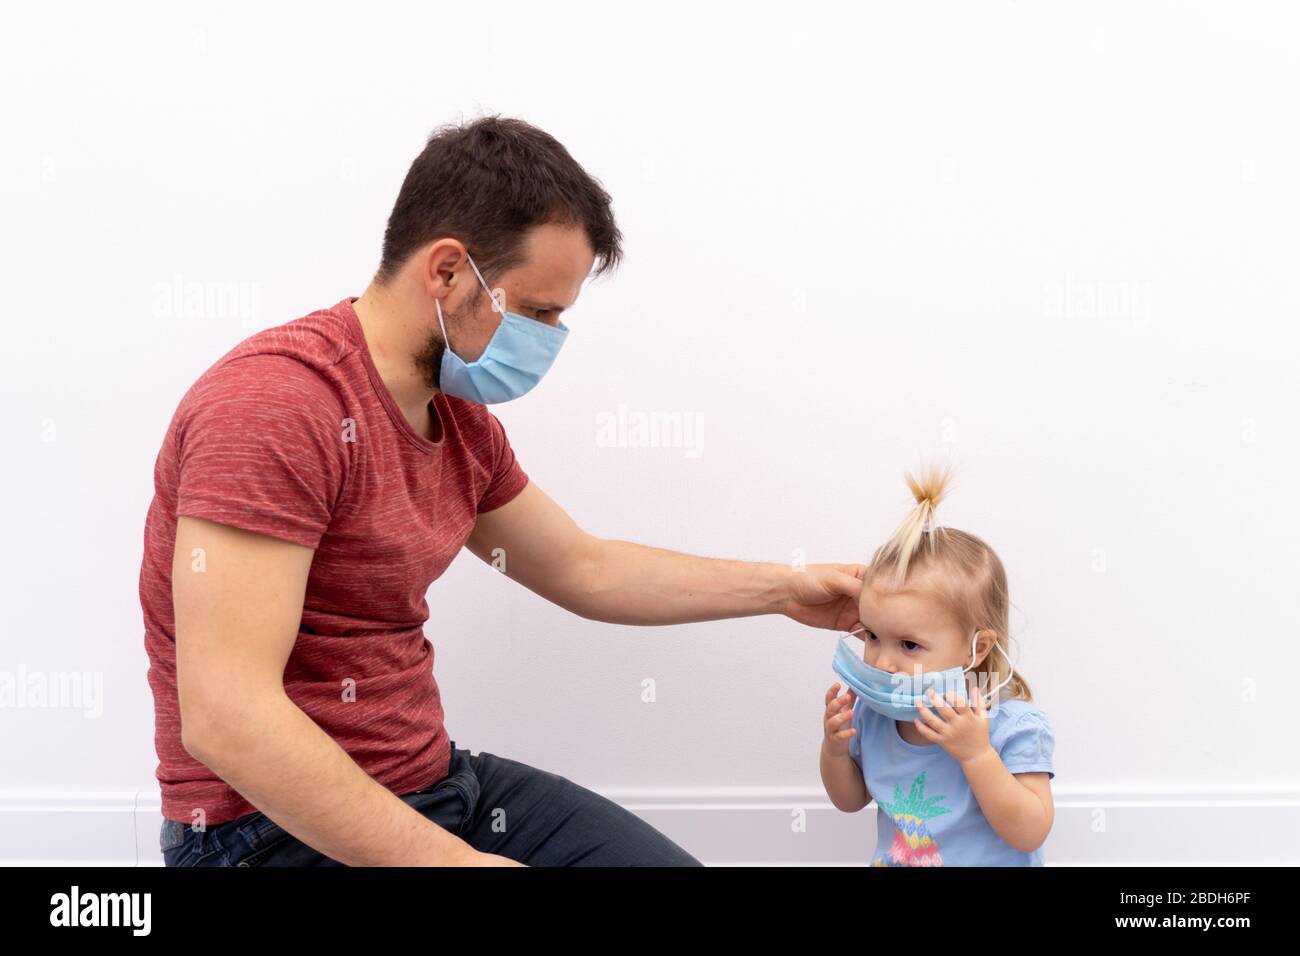 El hombre está poniendo una máscara protectora sobre su hijo Foto de stock